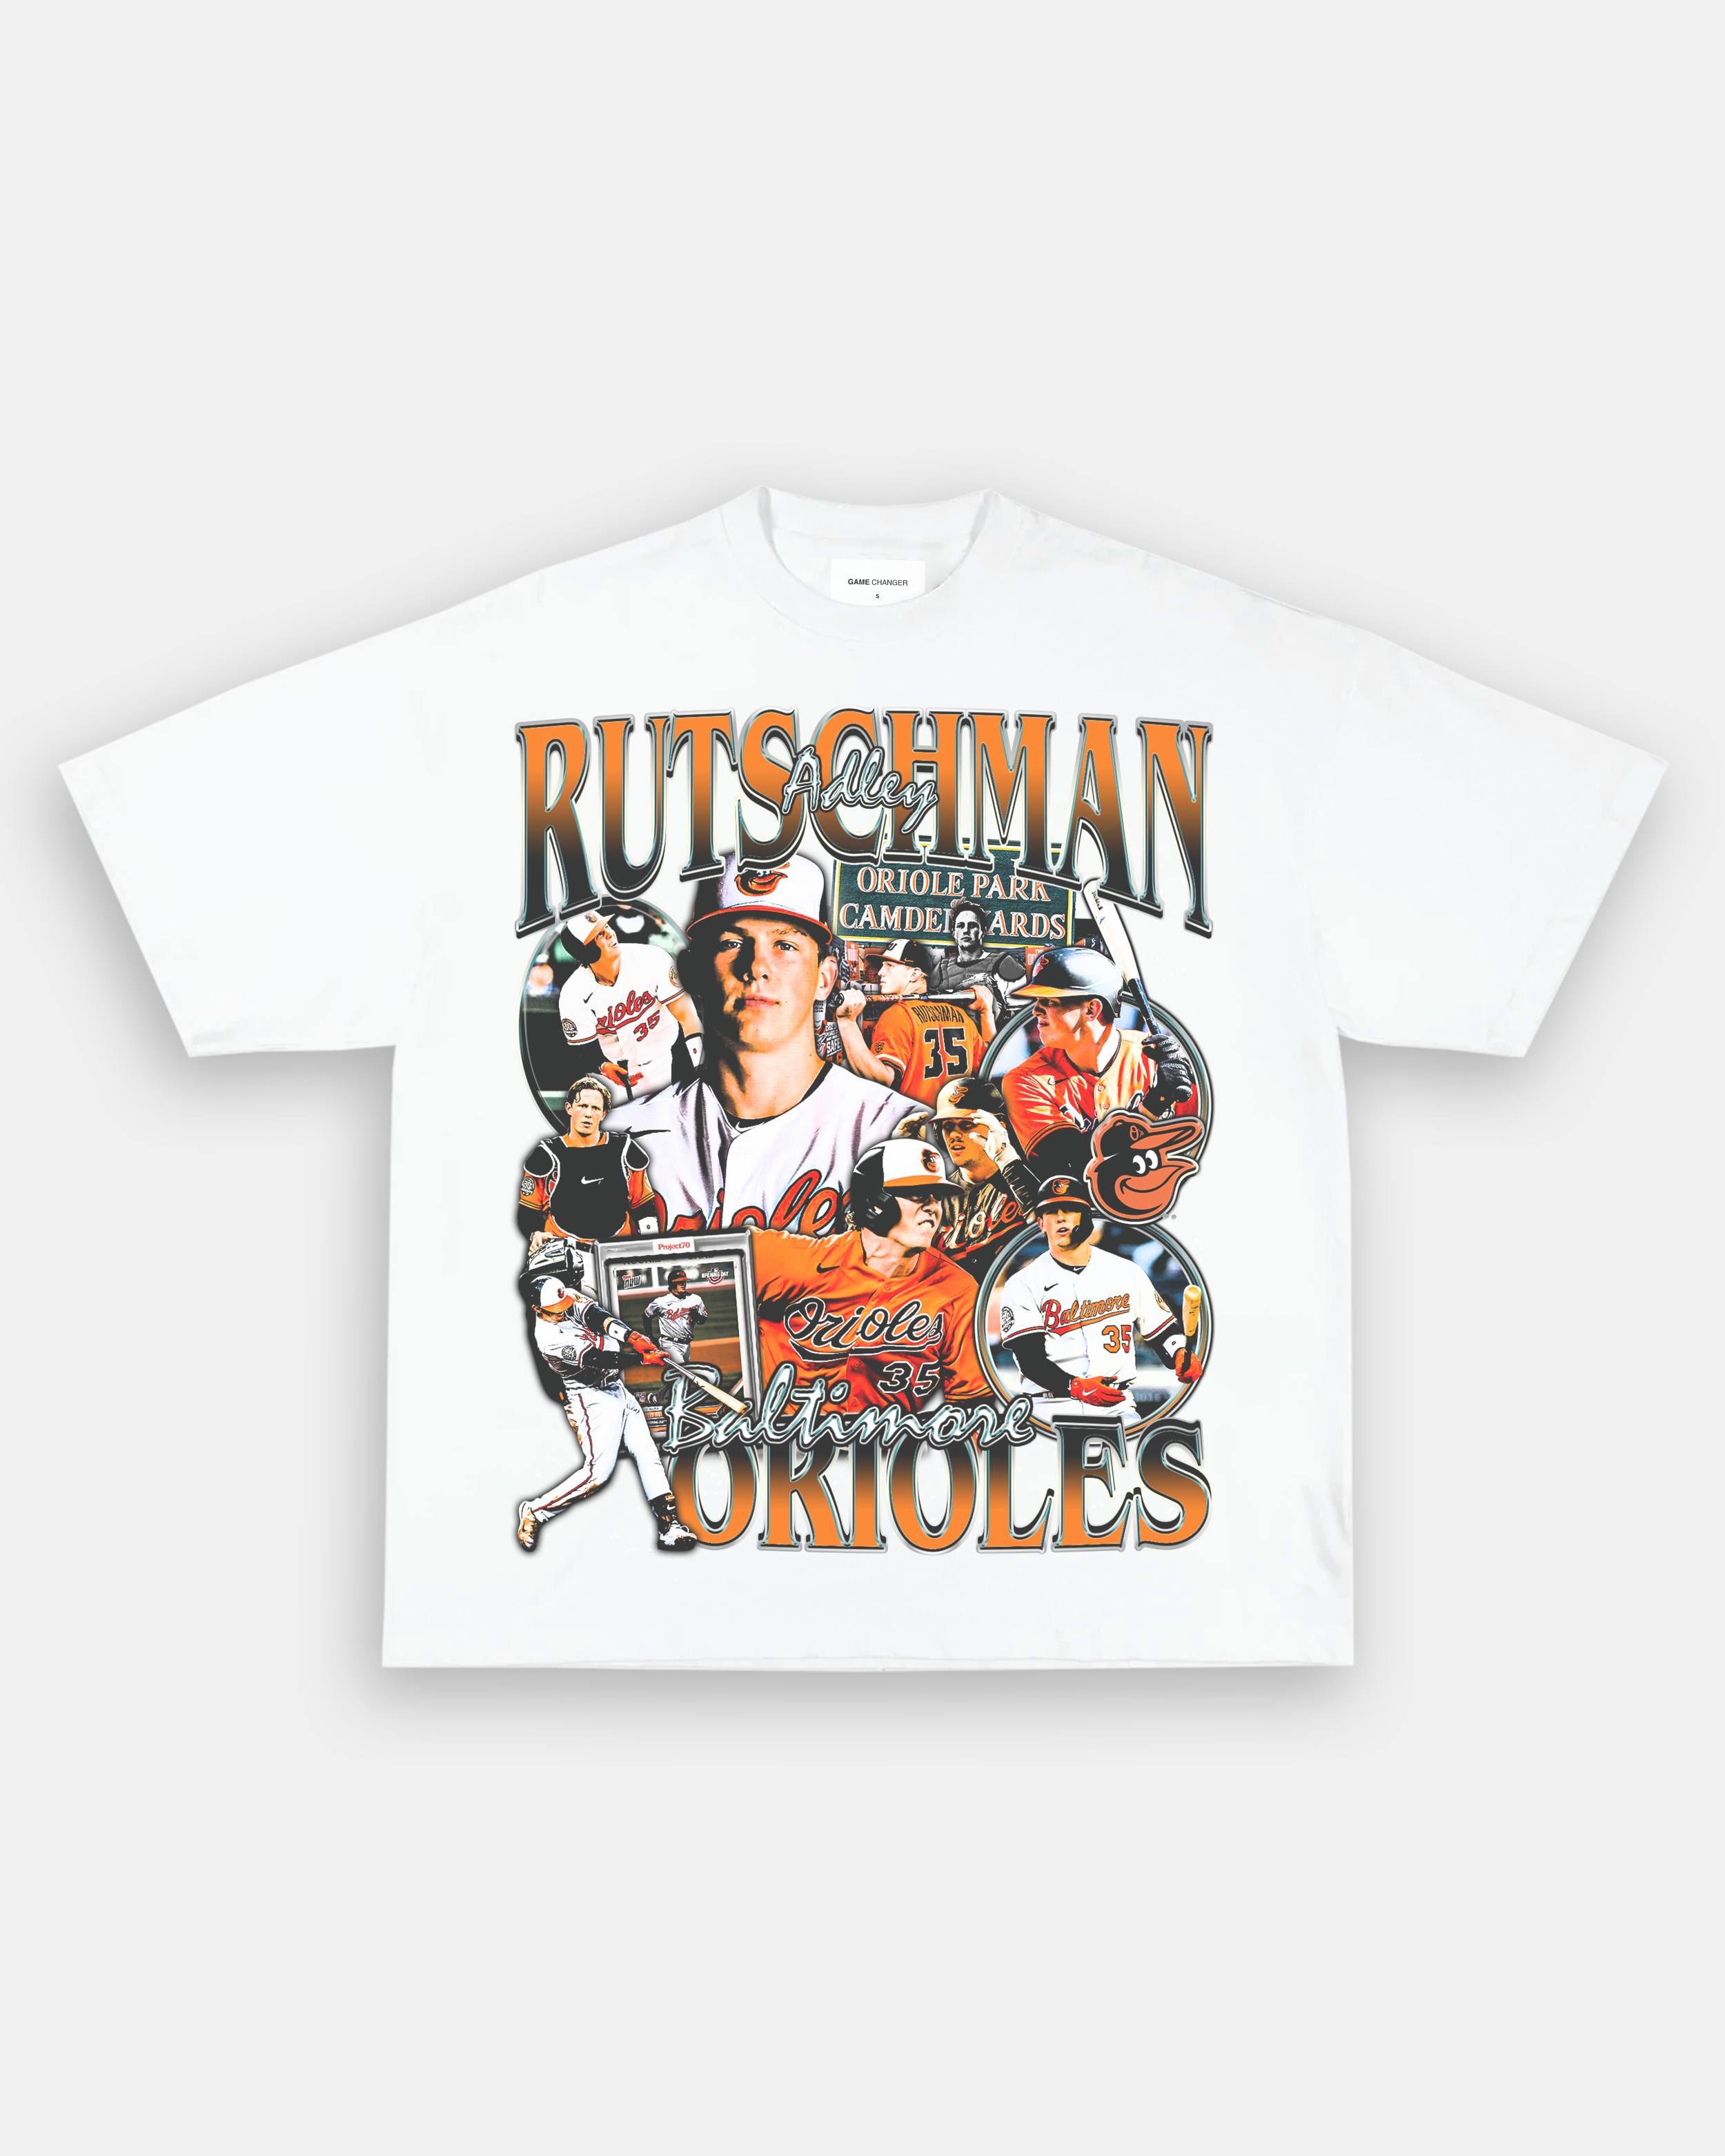 Adley Rutschman T-Shirt